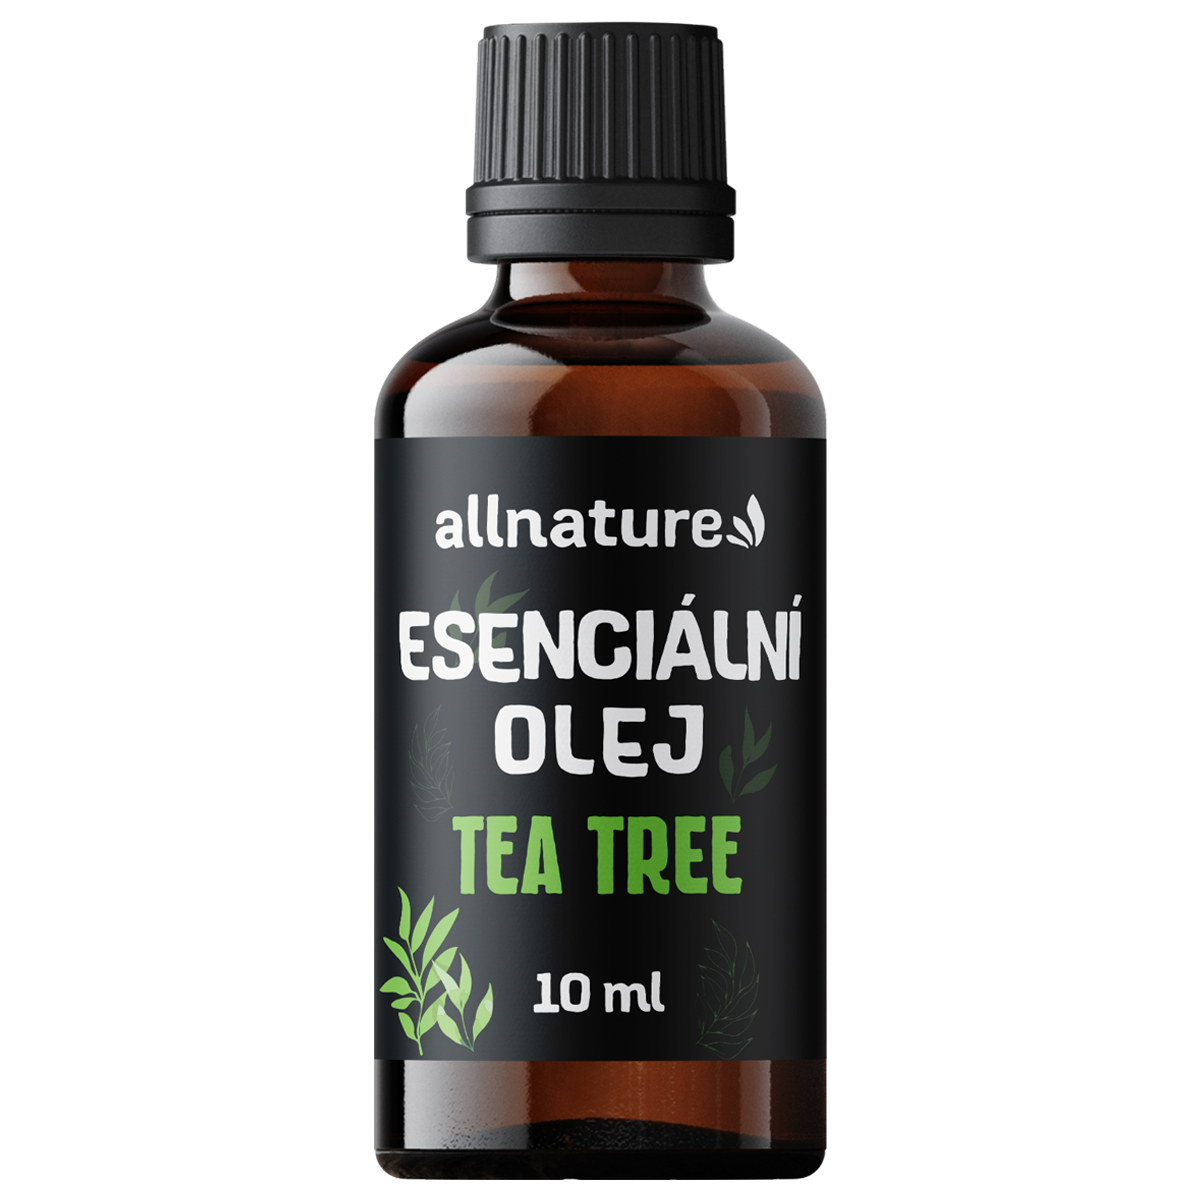 Allnature Esenciální olej Tea tree (10 ml) - silné antibakteriální účinky Allnature